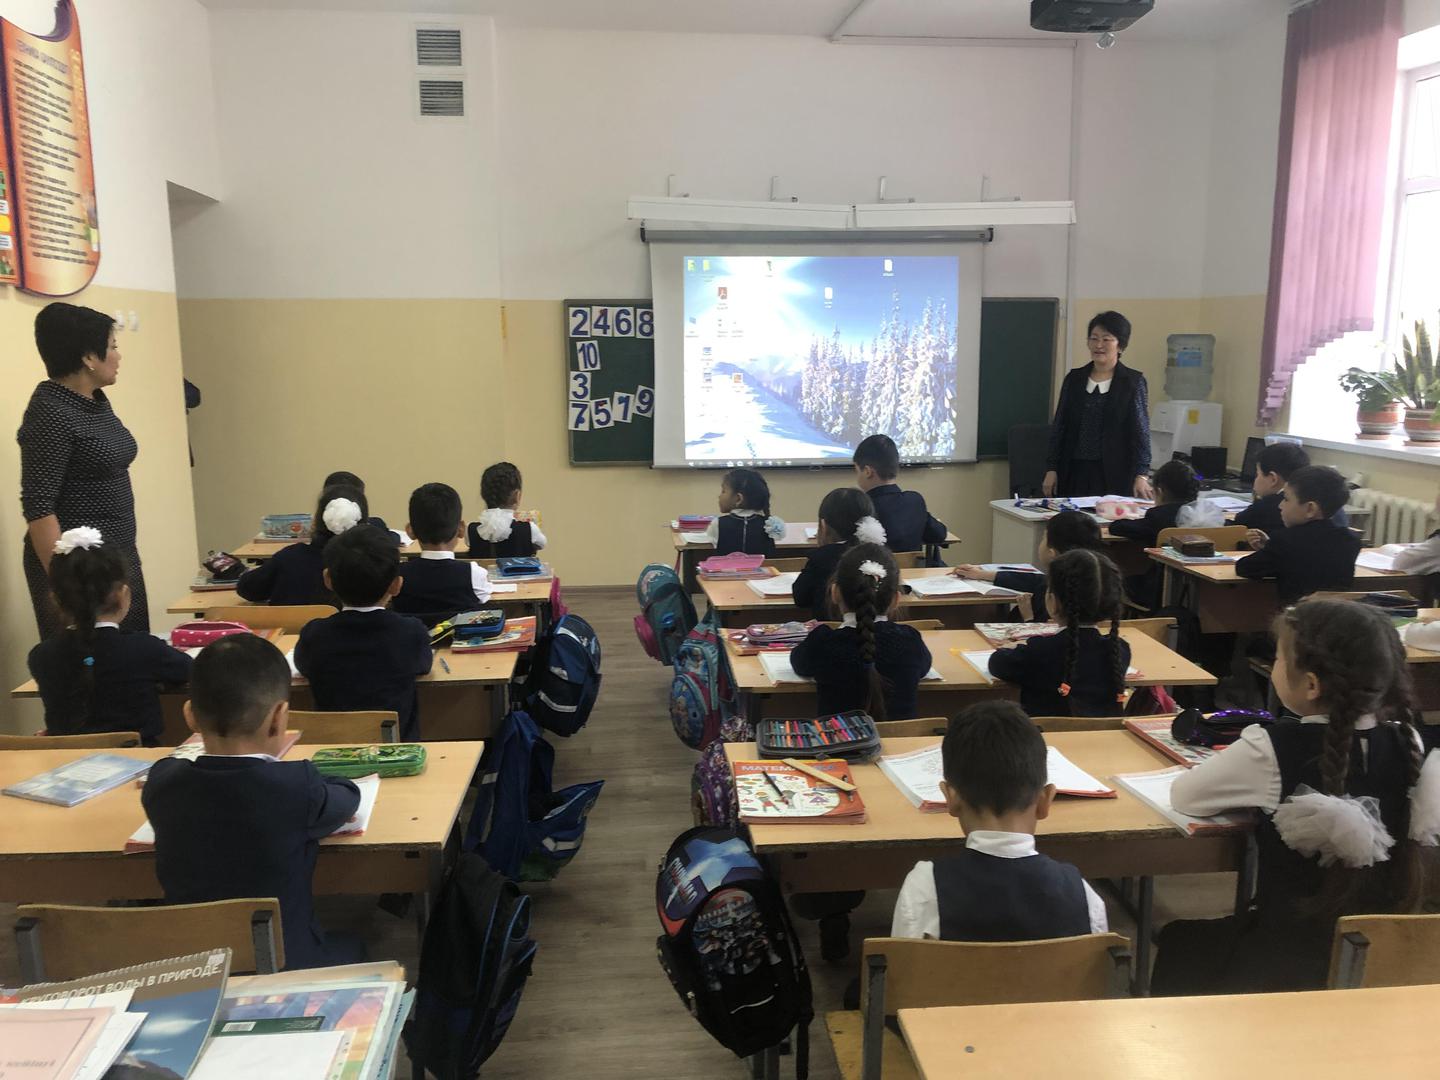 Урок математики в первом классе инклюзивной общеобразовательной школы в Алматы с участием, по меньшей мере, одного ребенка с инвалидностью. 